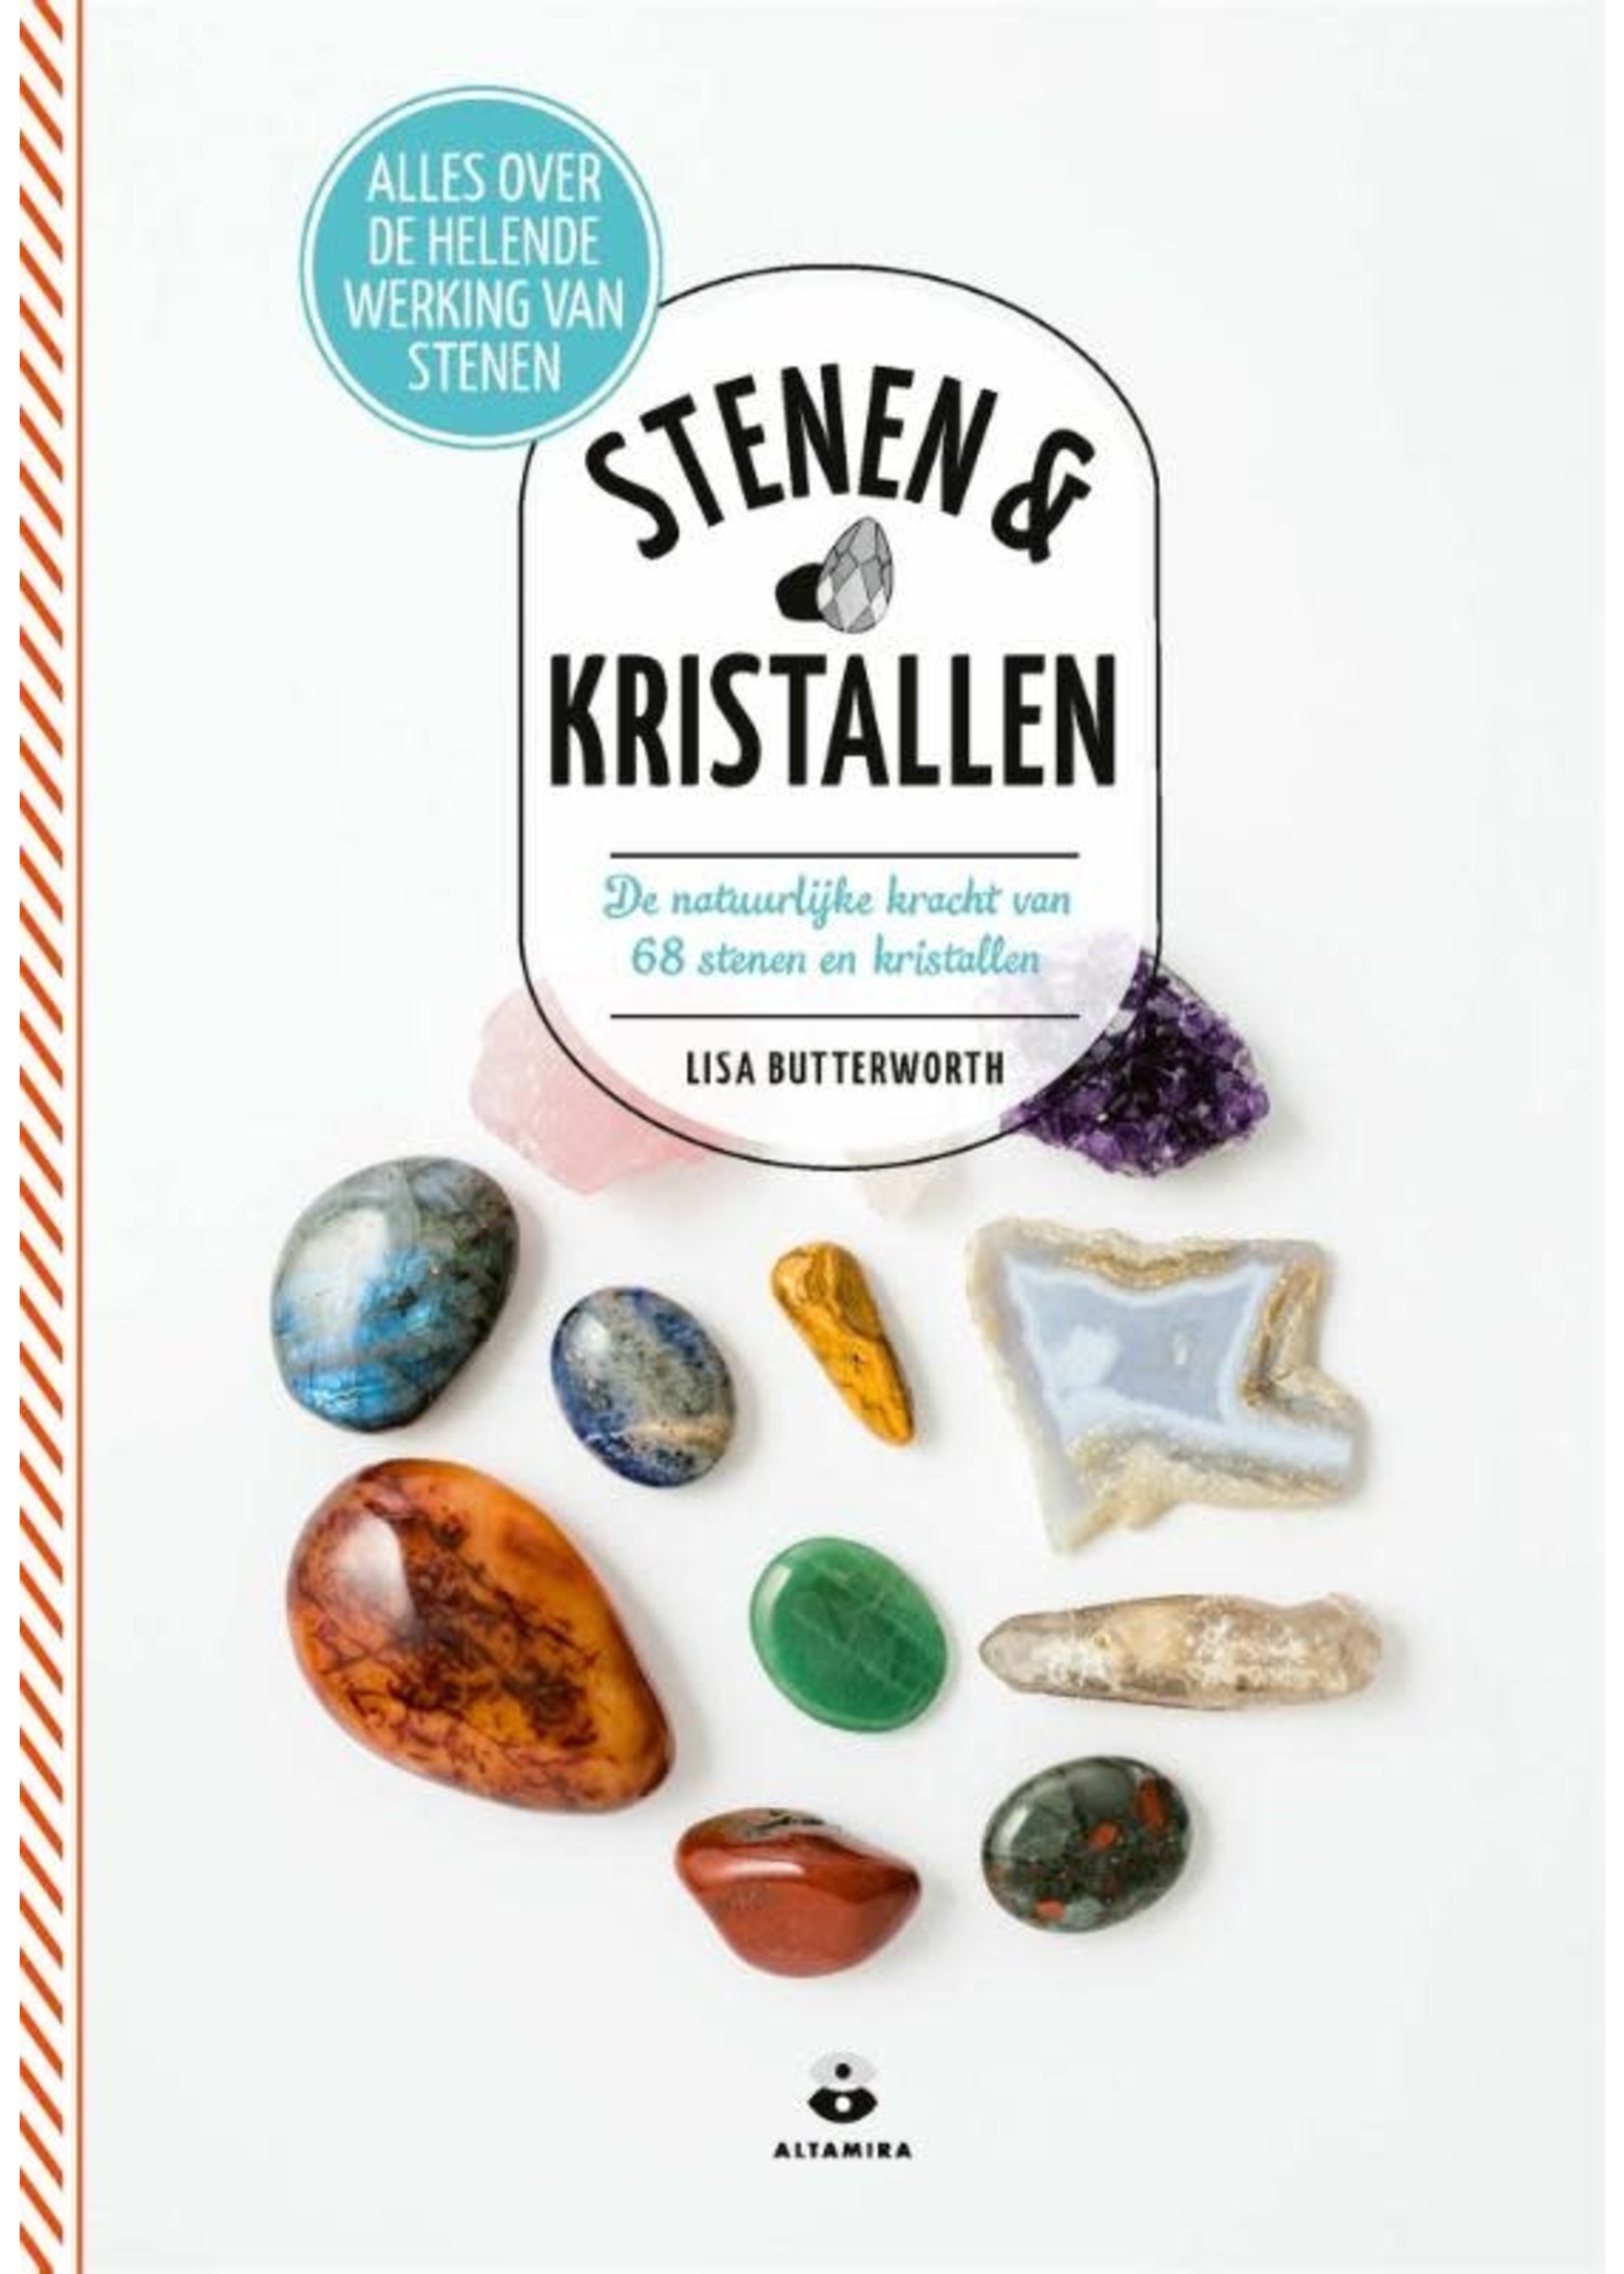 Boek STENEN & KRISTALLEN, De natuurlijke kracht van 68 stenen en kristallen, Lisa Butterworth, Altamira, 9789401304177